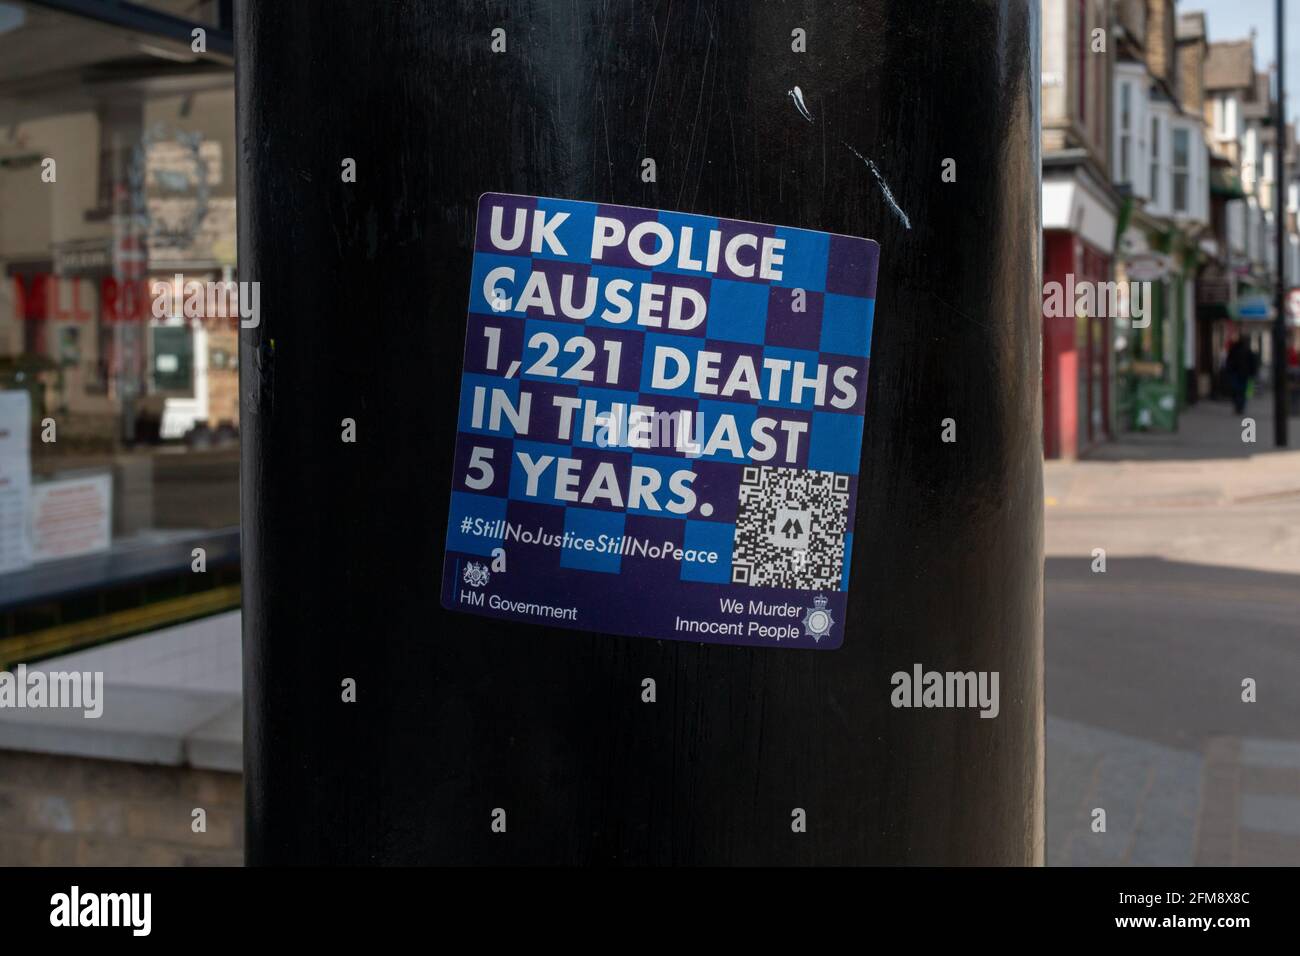 Una pegatina azul contra la policía que afirma que la policía del Reino Unido ha causado 1221 muertes en los últimos cinco años. Foto de stock